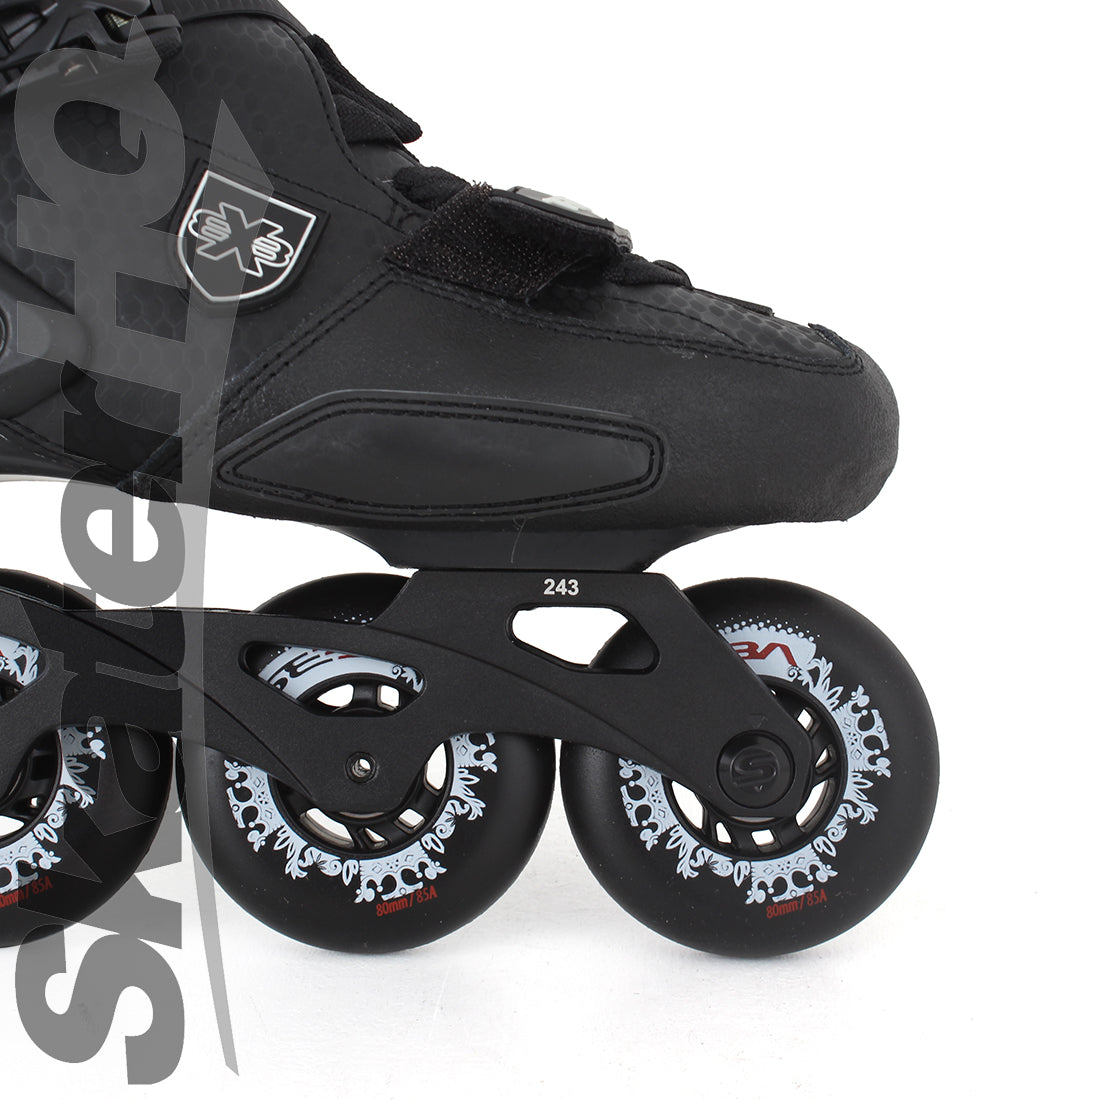 Seba Trix 2 16 80 Black 12US/EU46 Inline Rec Skates